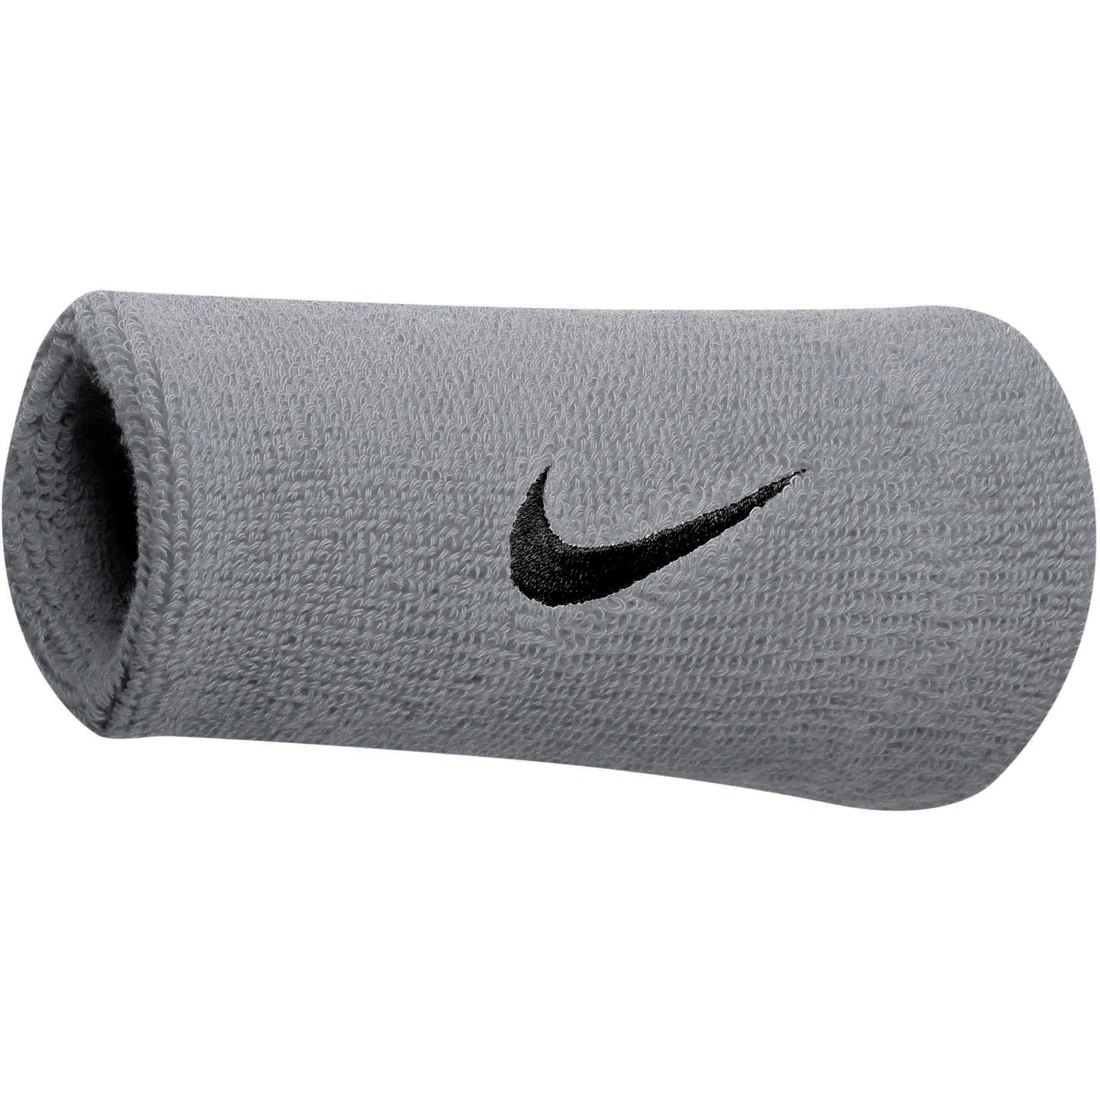 Produktbild von Nike Swoosh Doublewide Schweißband - 2er Pack - matte silver/black 078